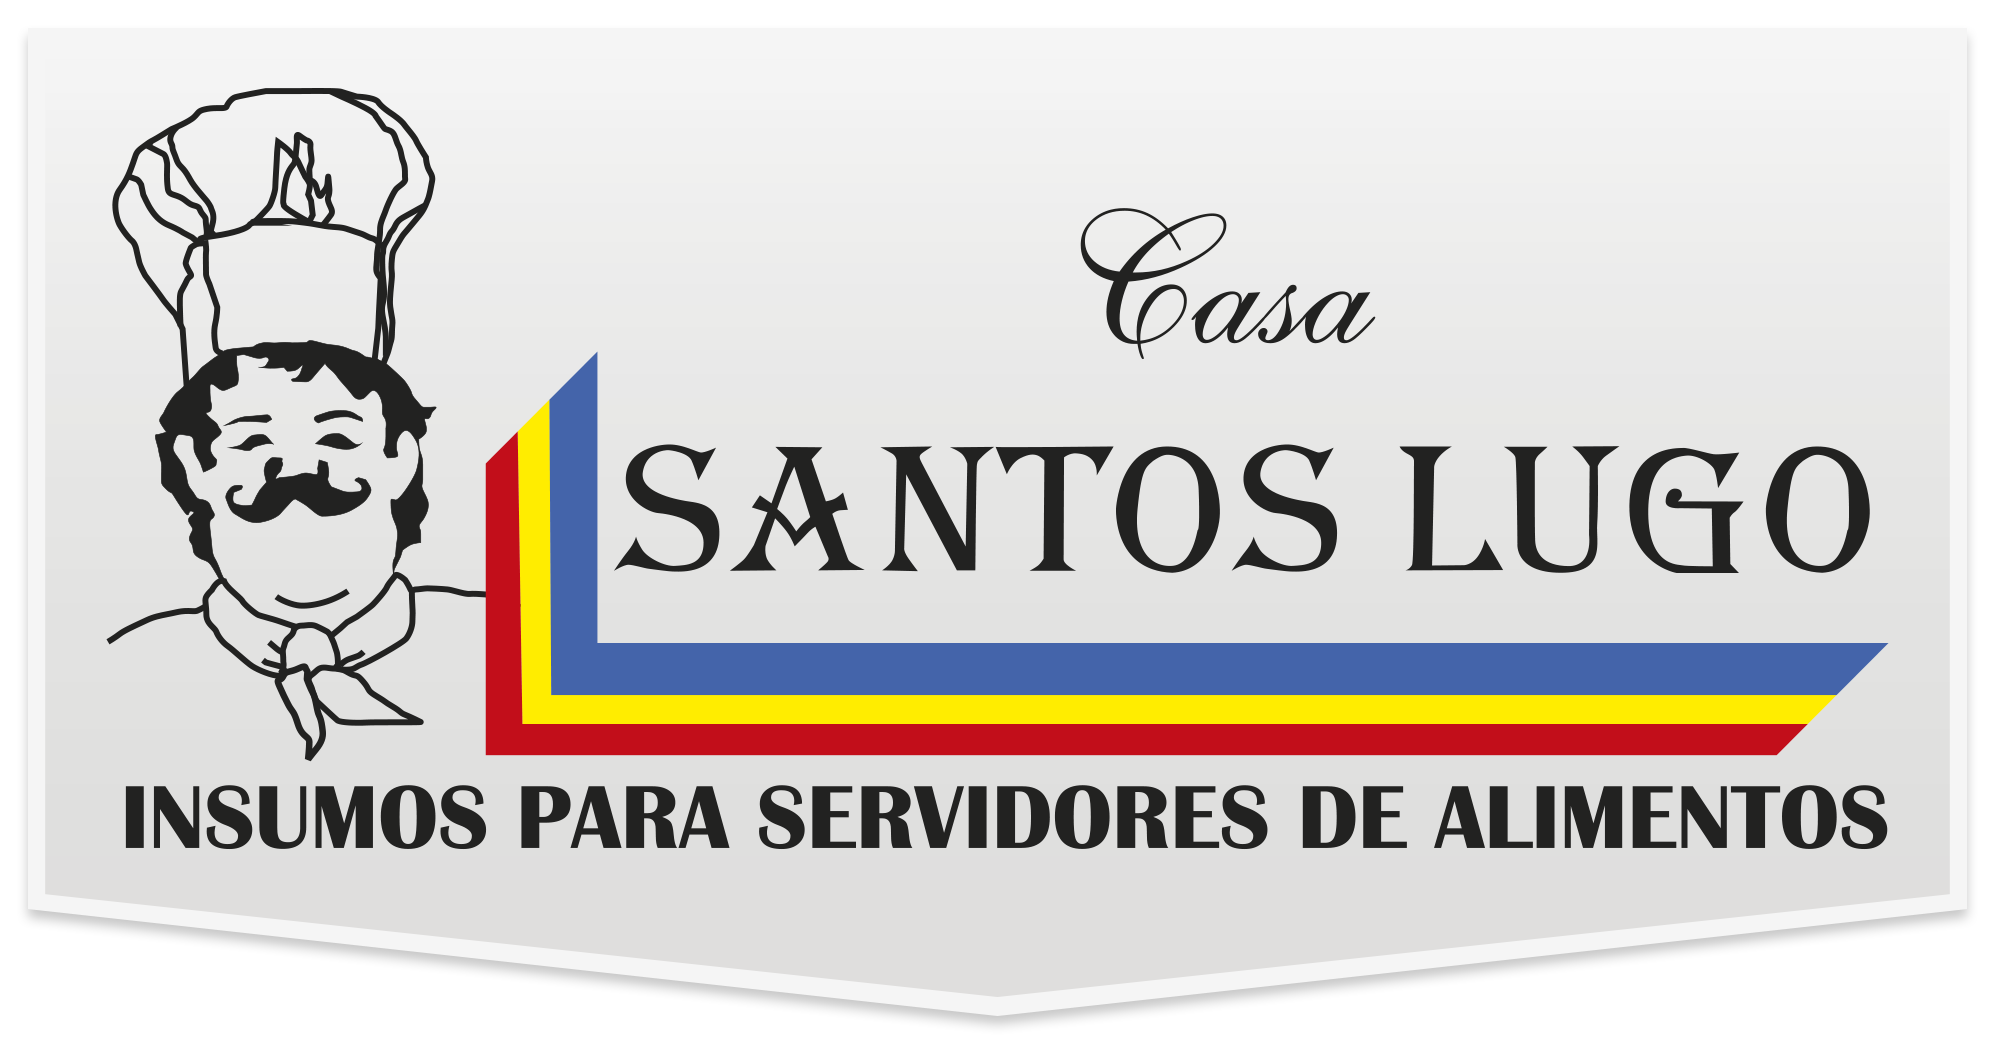 Santos Lugo | Categoría Carnes frías y Quesos